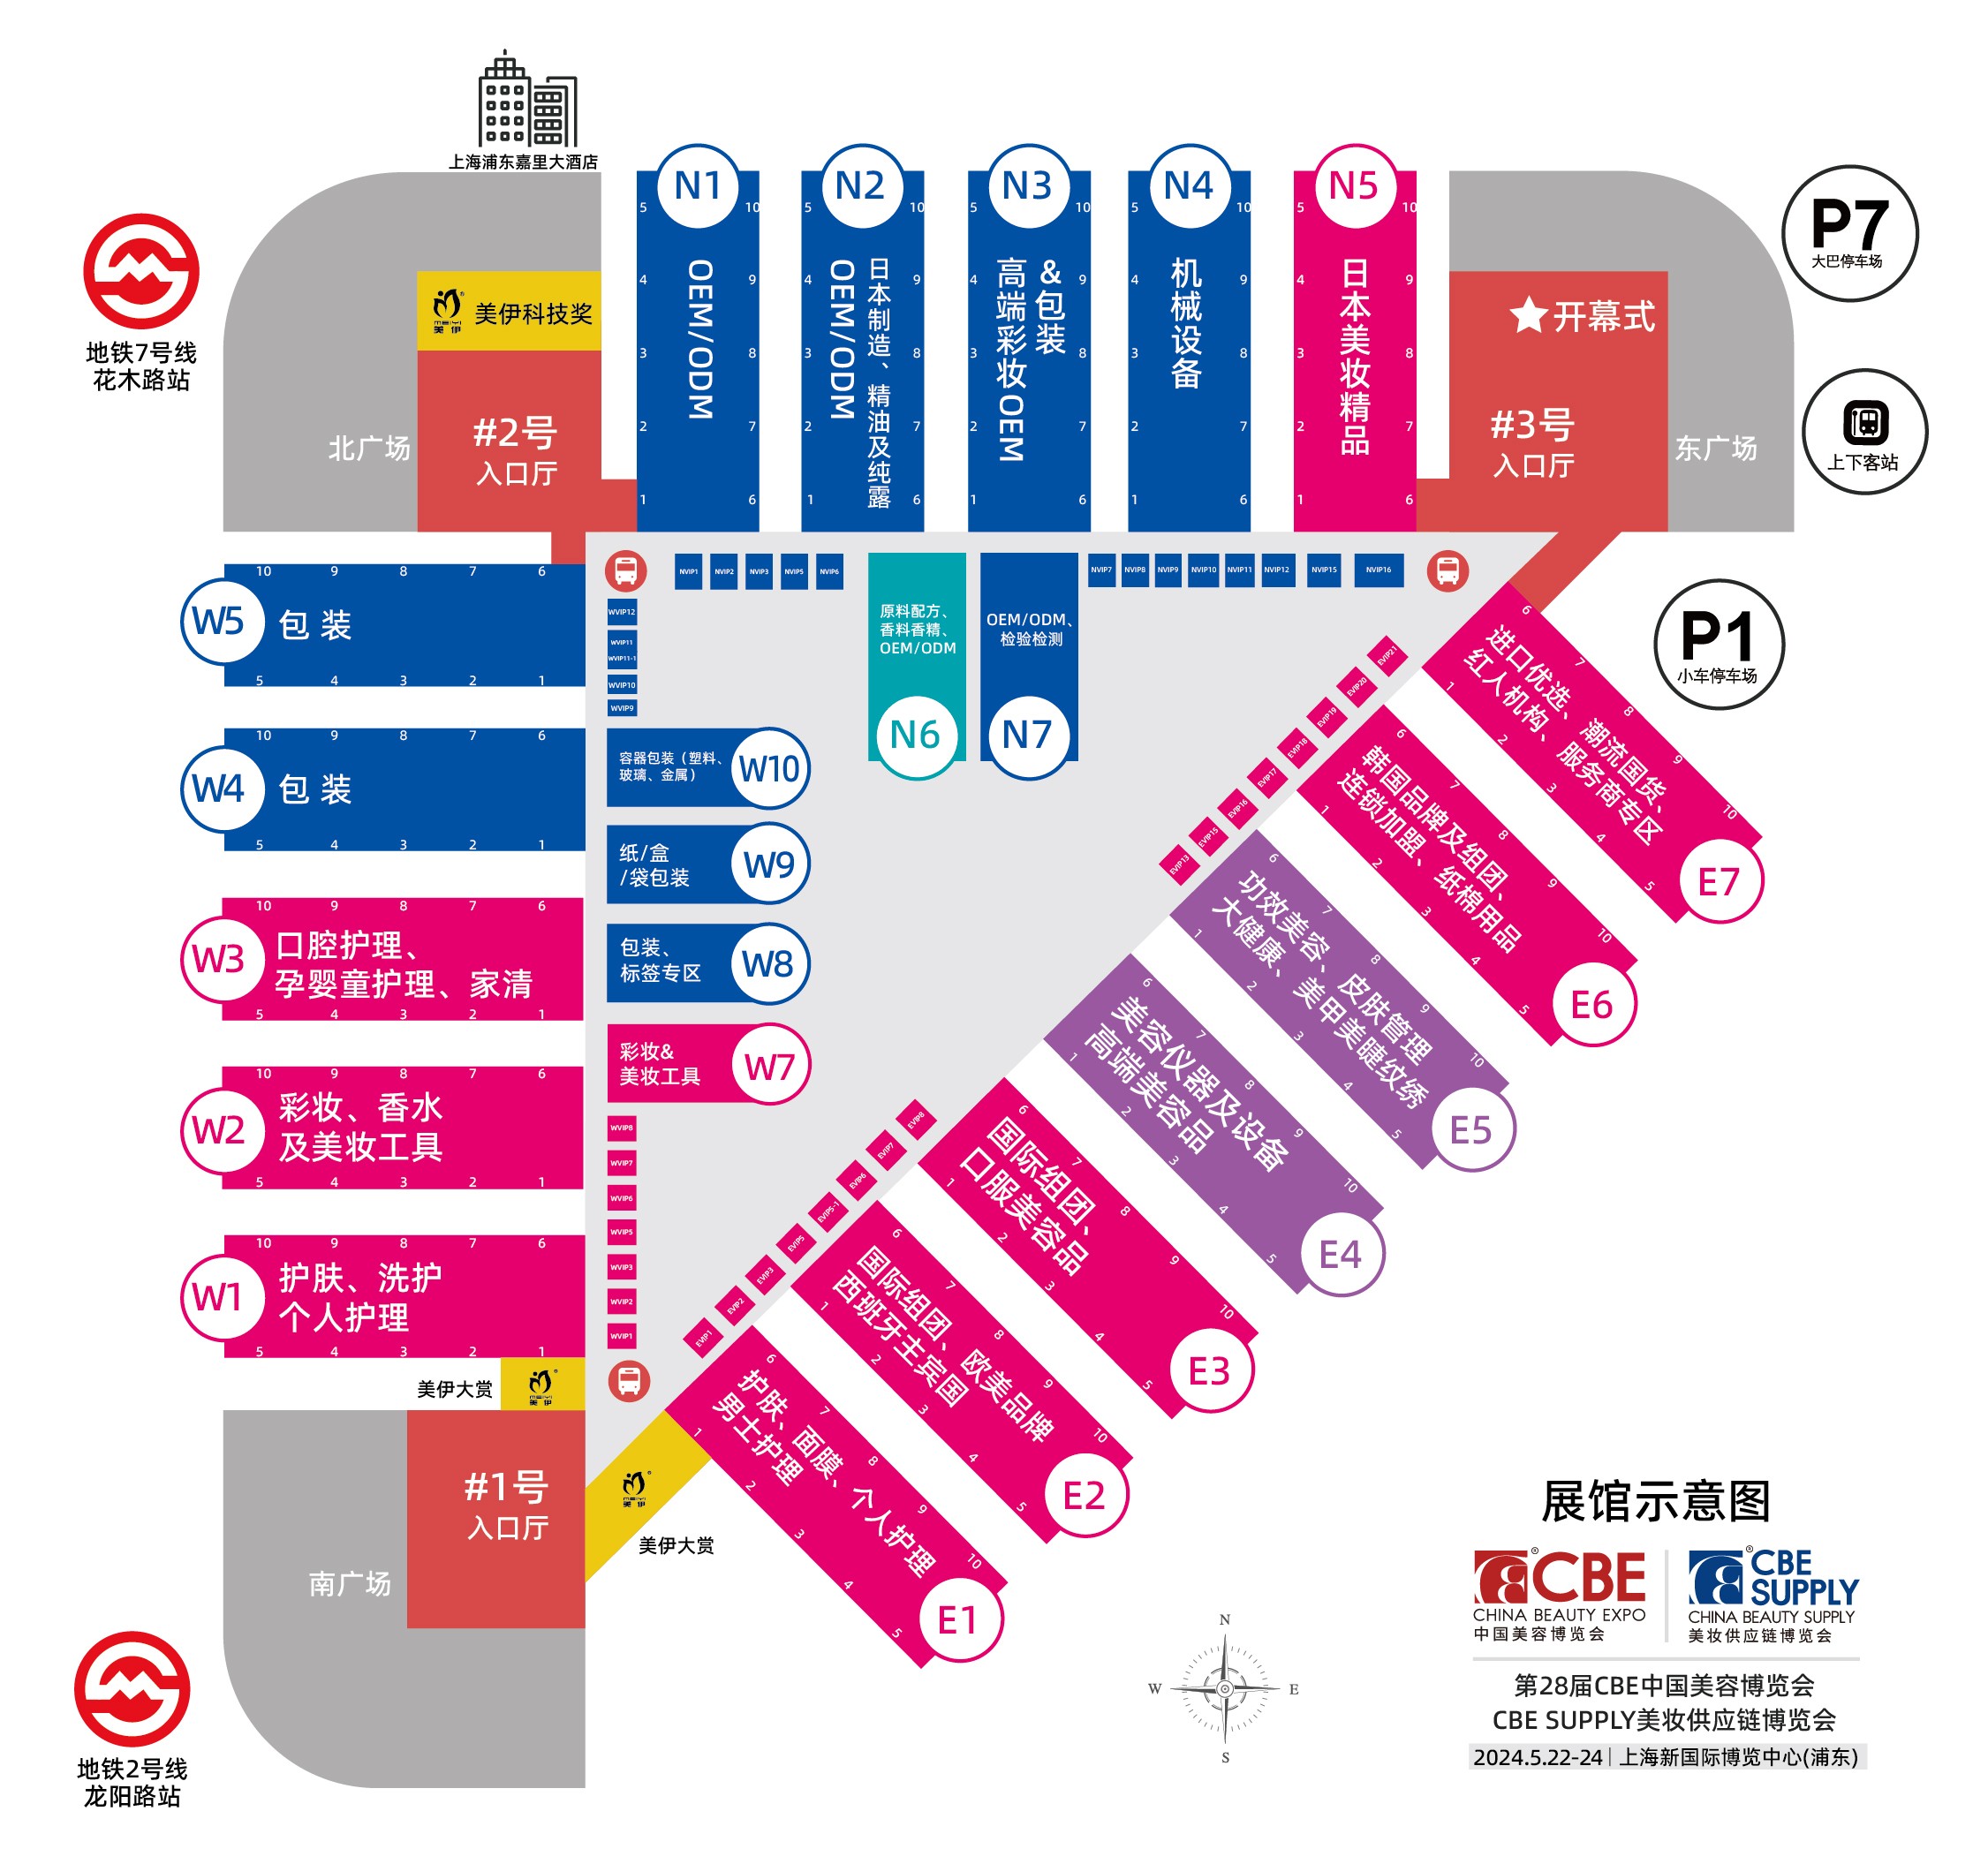 20230718-28届展馆中文地图-更新版.jpg